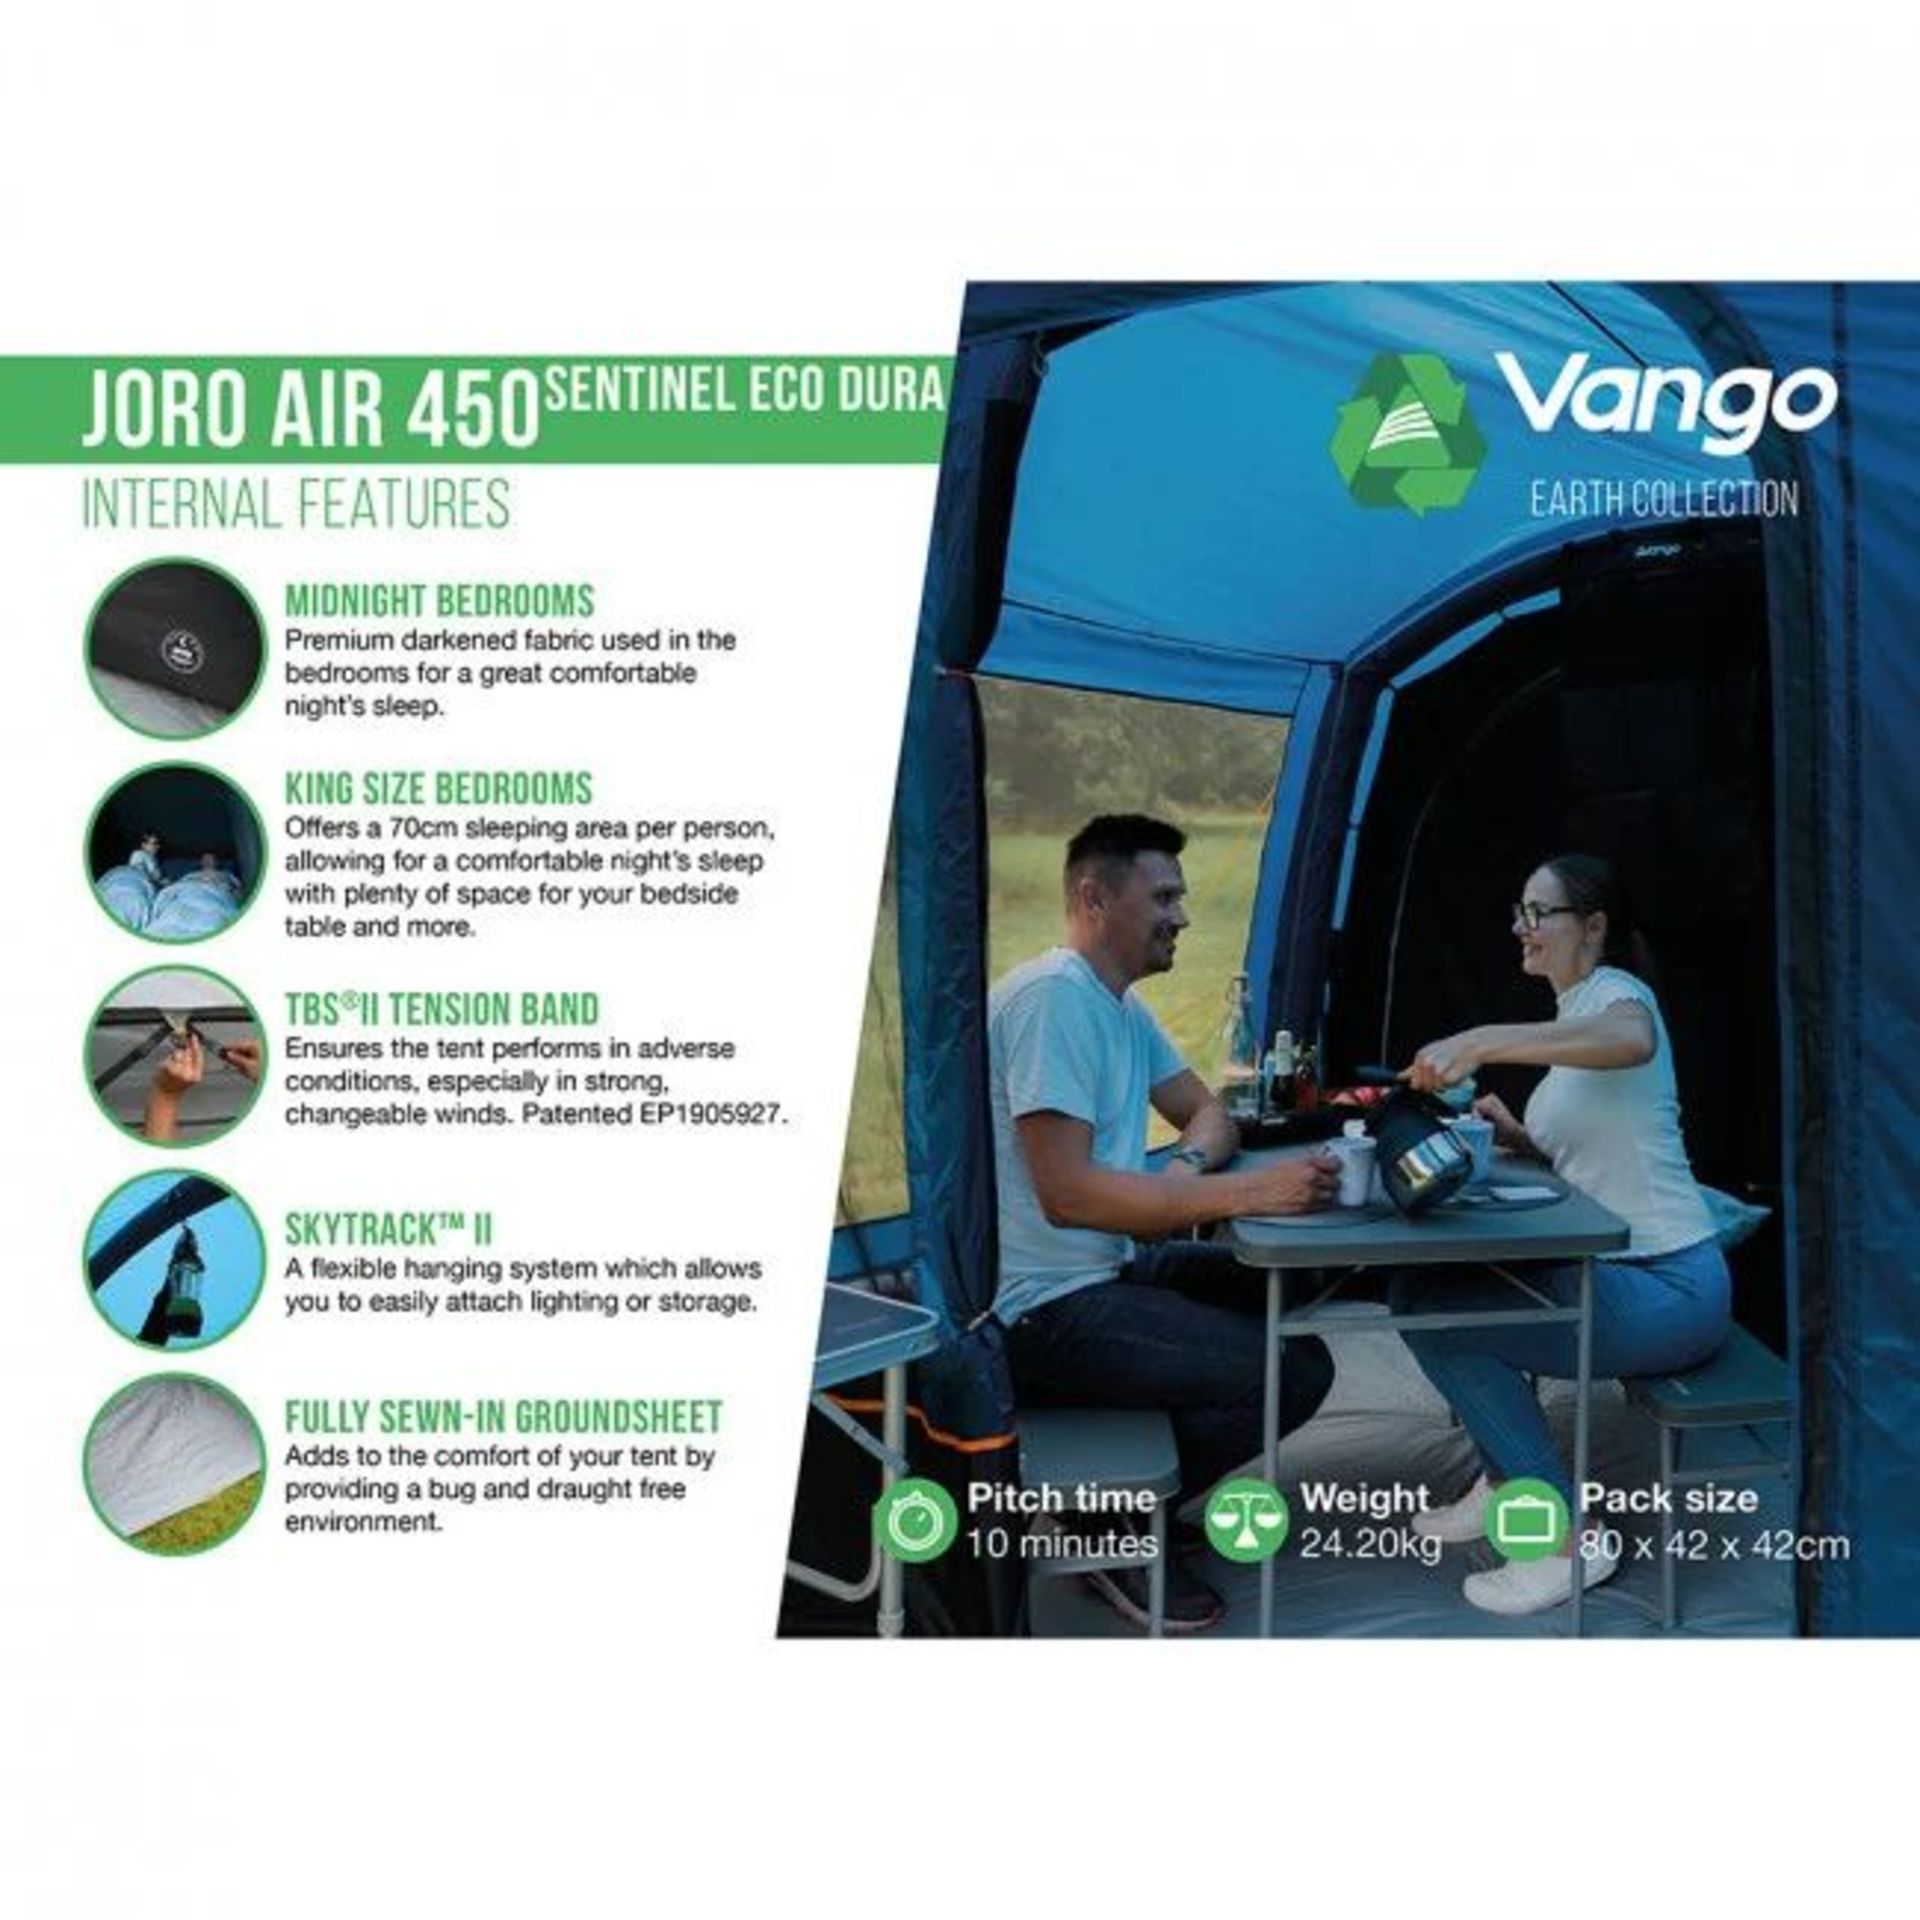 BRAND NEW Vango Joro 450 Air Tent Sentinel Eco Dura Package, Featuring Vango's revolutionary AirBeam - Image 3 of 10